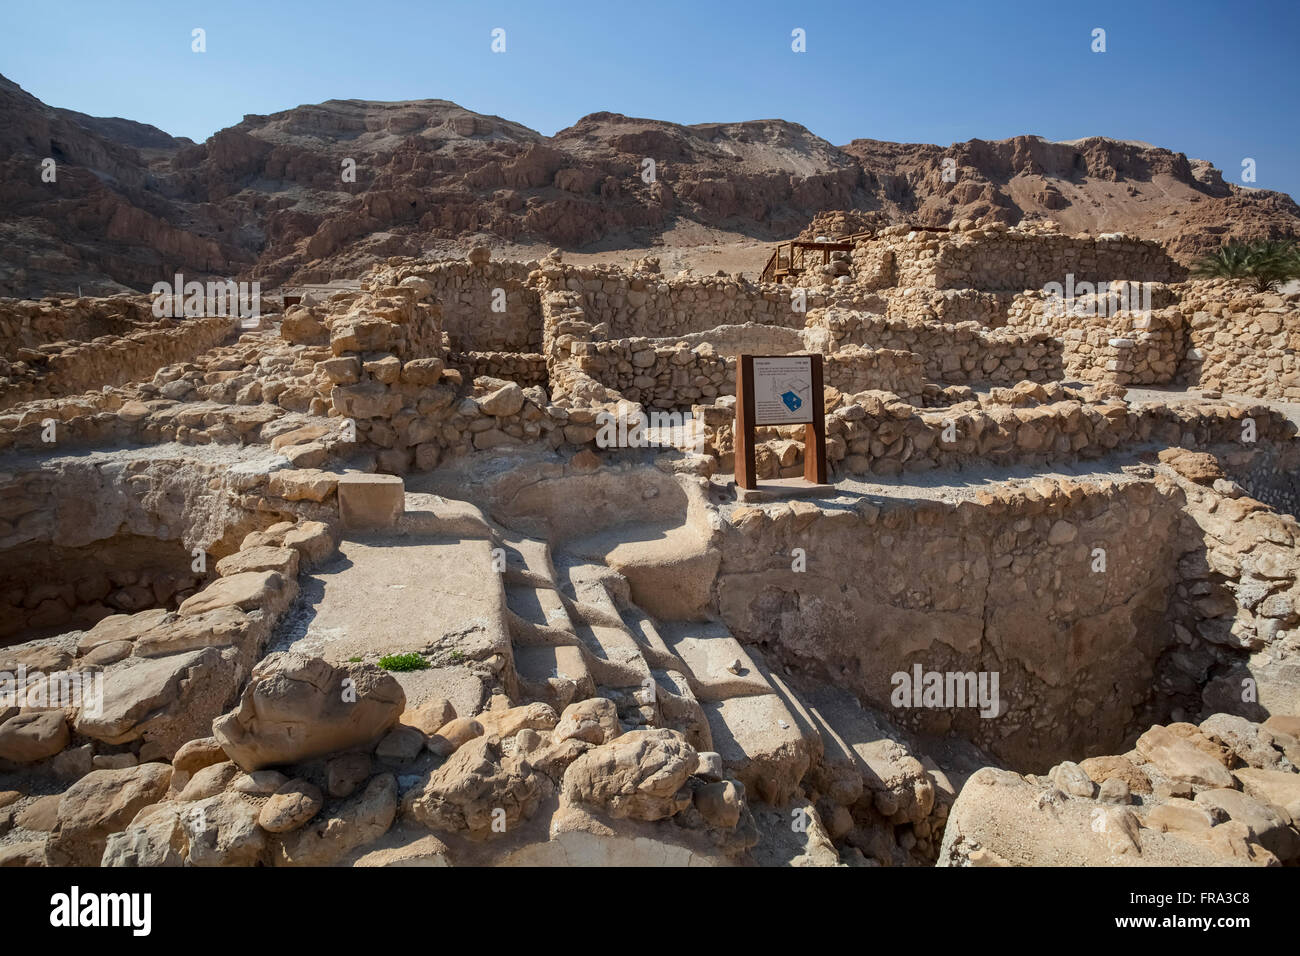 Les ruines de la communauté Qumran, avec des marches vers le bas utilisées pour les bains rituels et les diviseurs sur chaque étape étaient de s'assurer que l'impure Descending fait... Banque D'Images